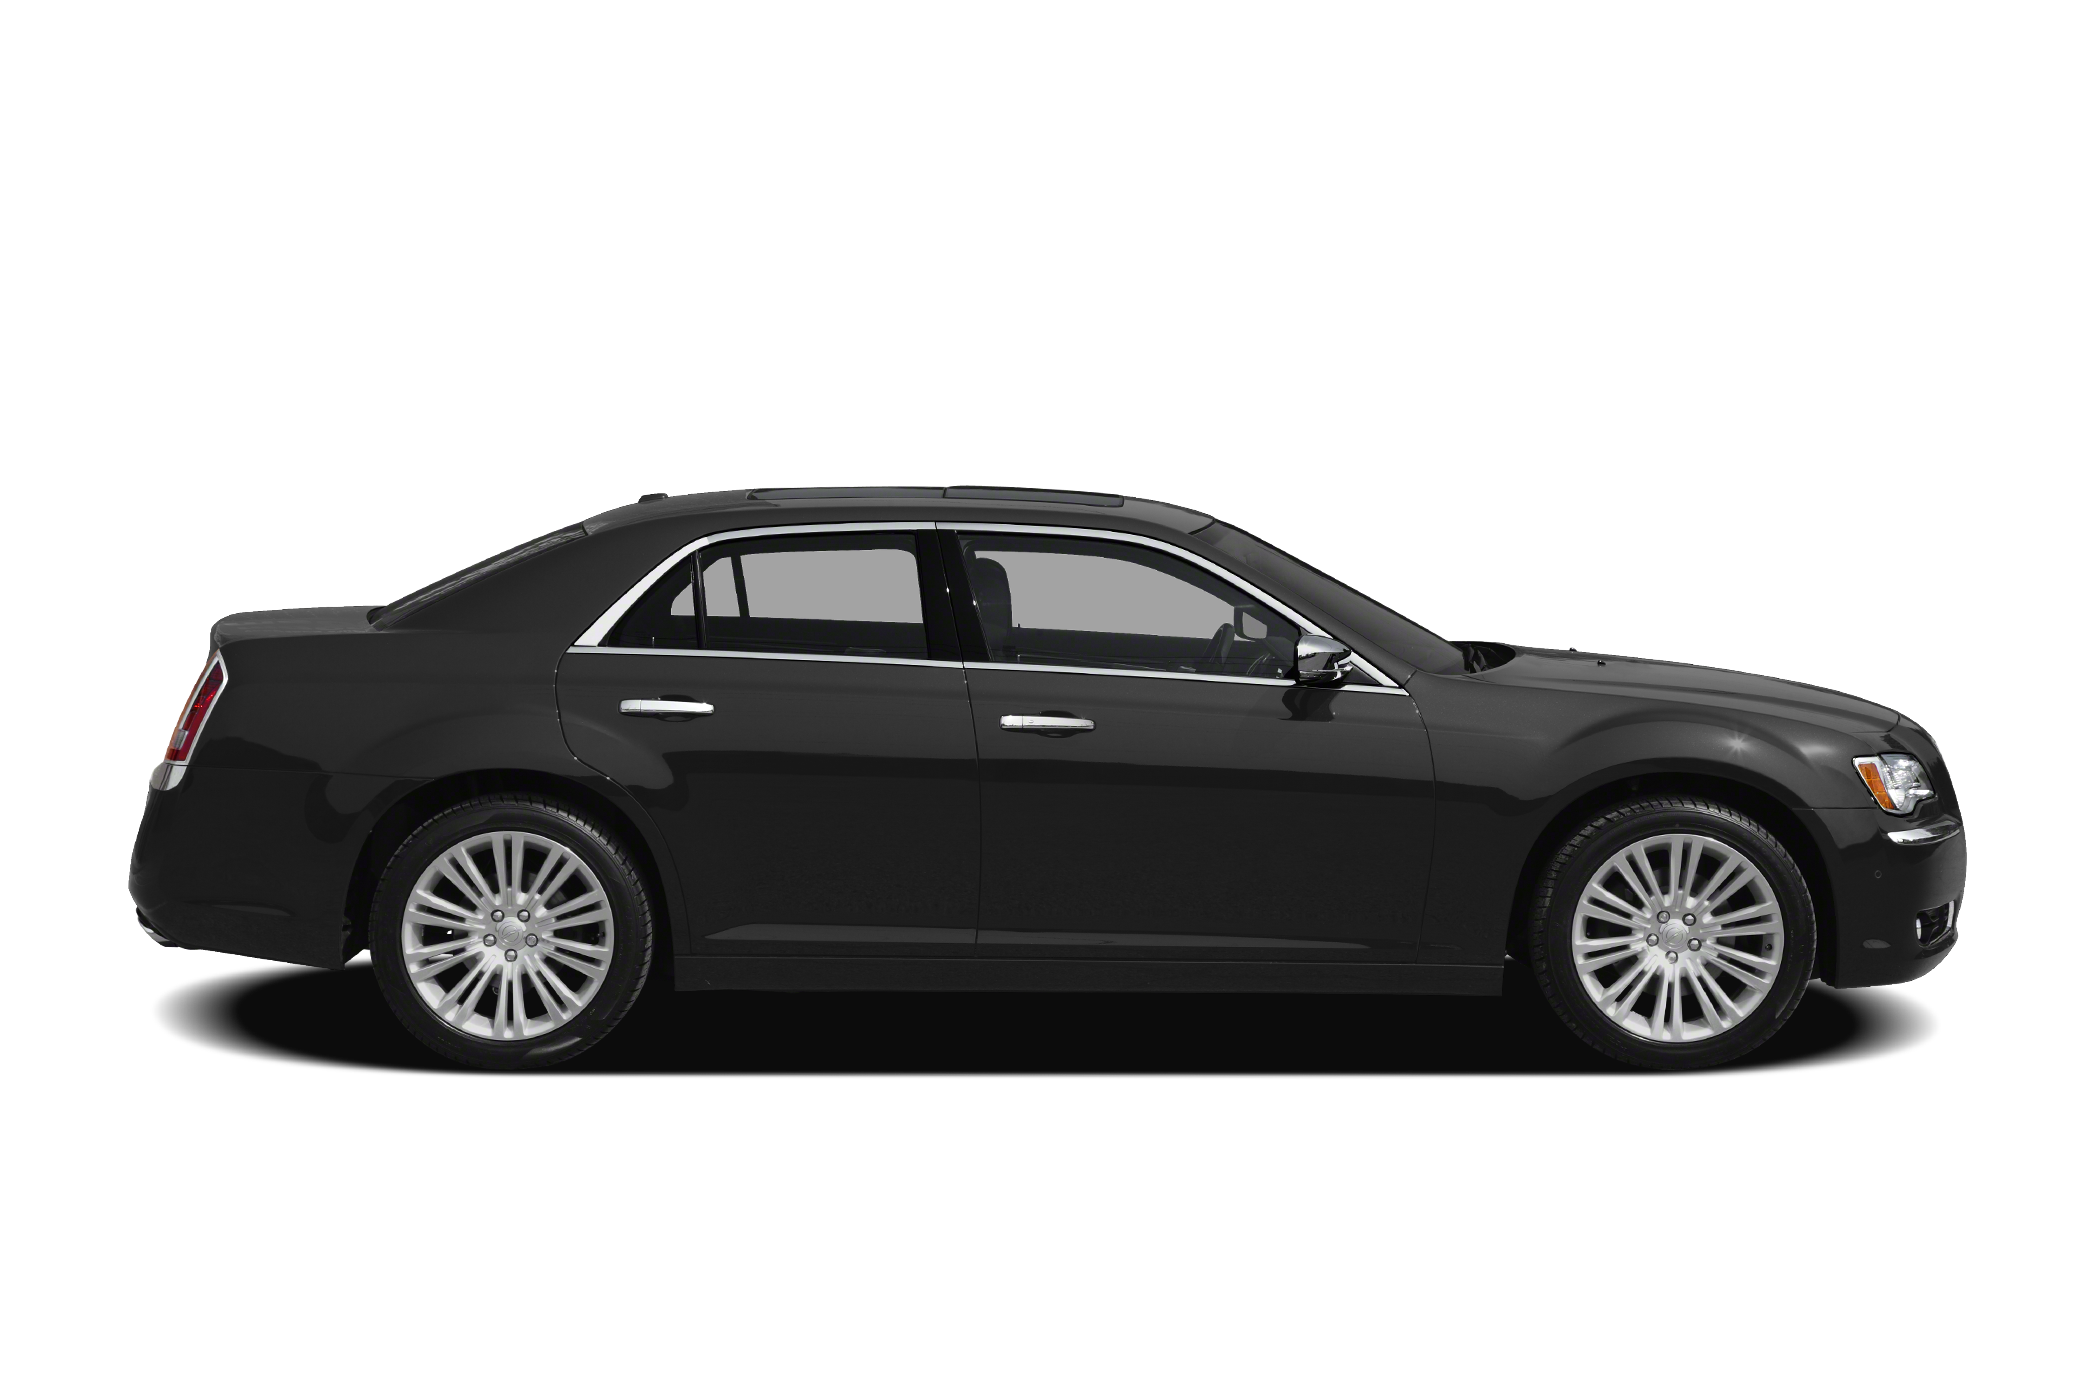 2012 Chrysler 300C